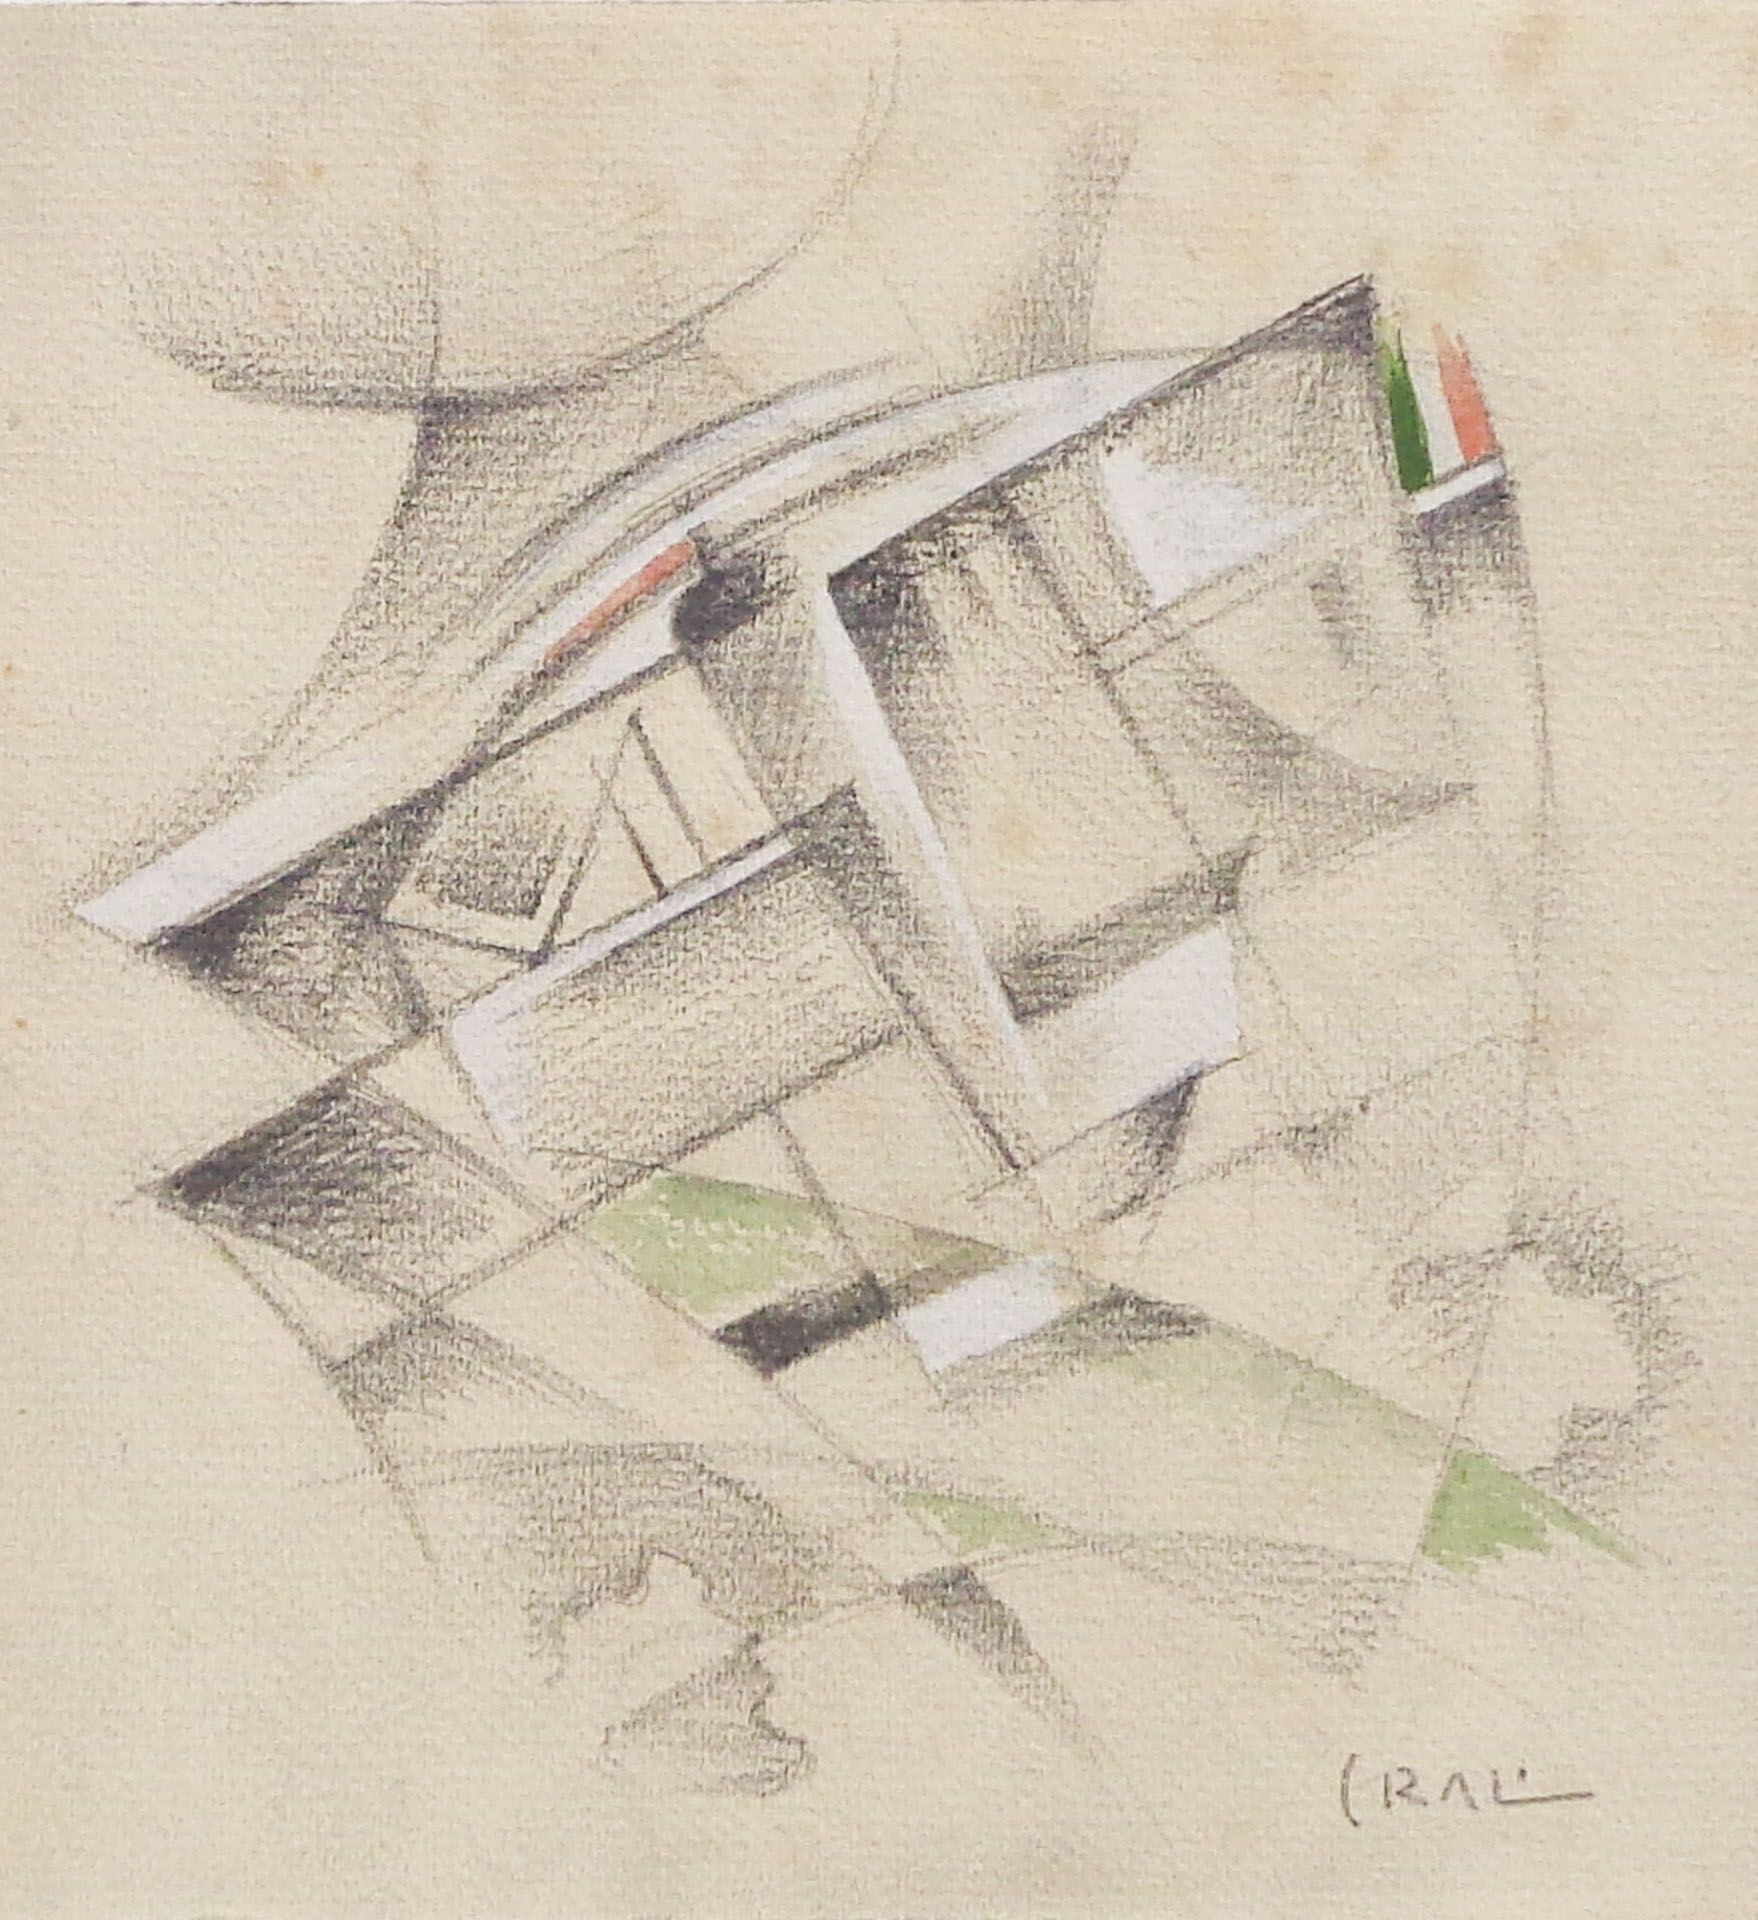 Tullio Crali - Verso il Cosmo, 1929/30